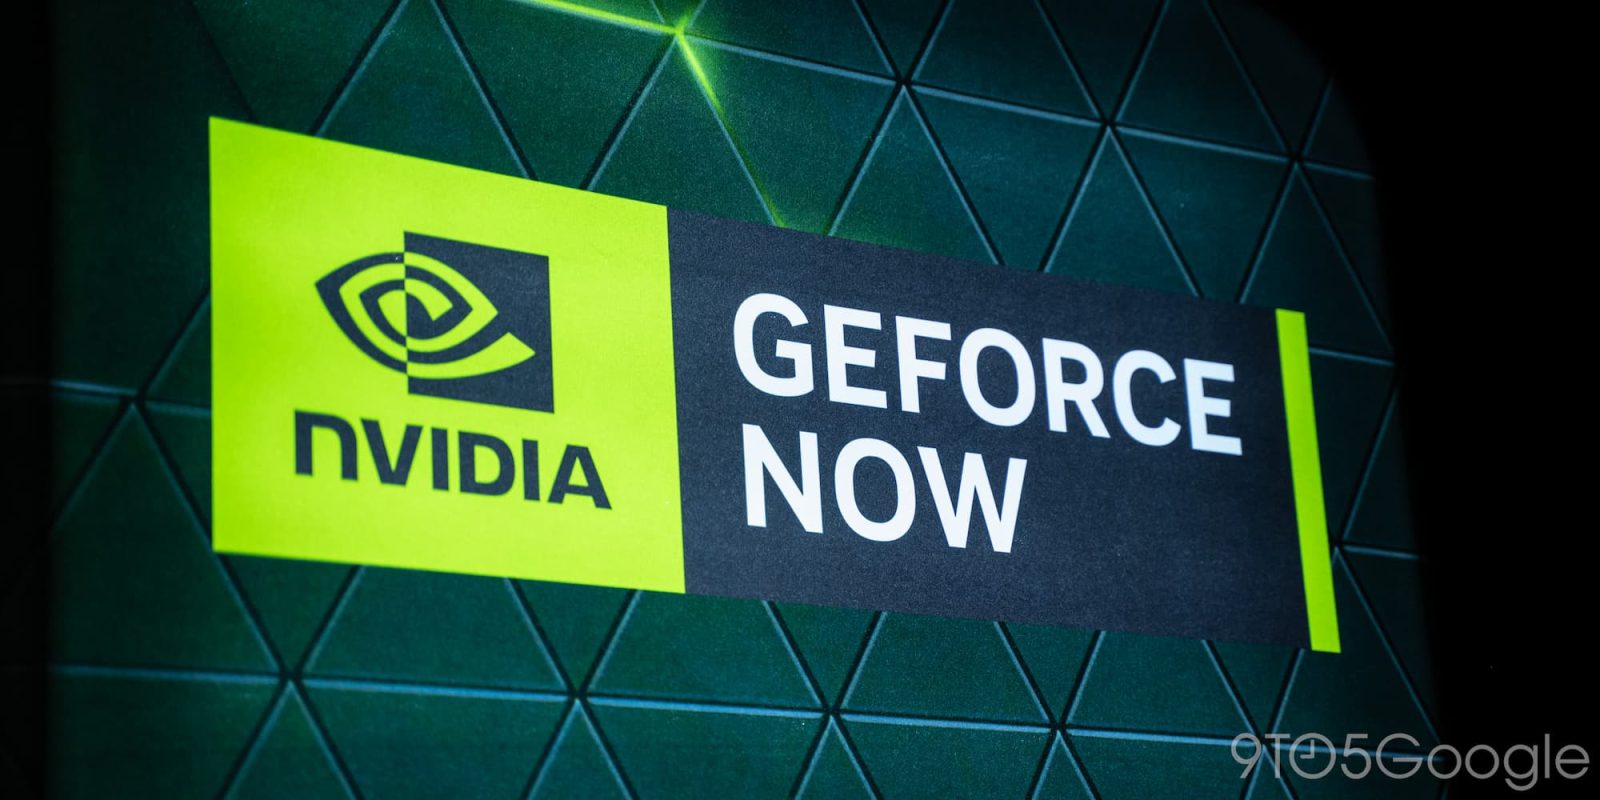 nvidia geforce now logo